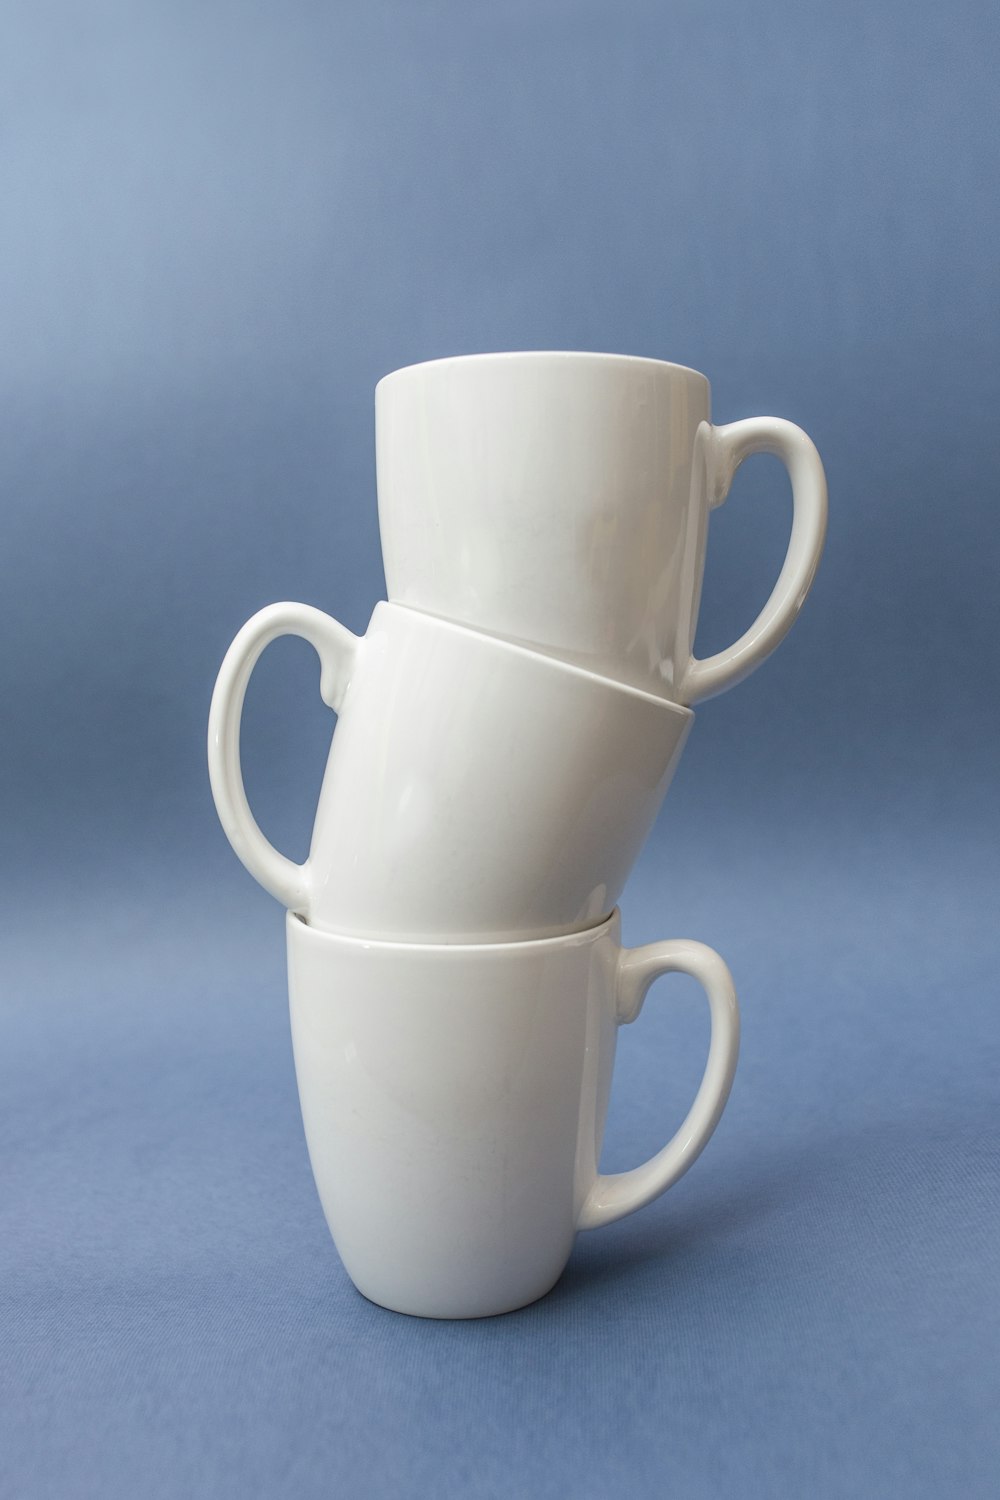 Tres tazas de cerámica blanca apiladas